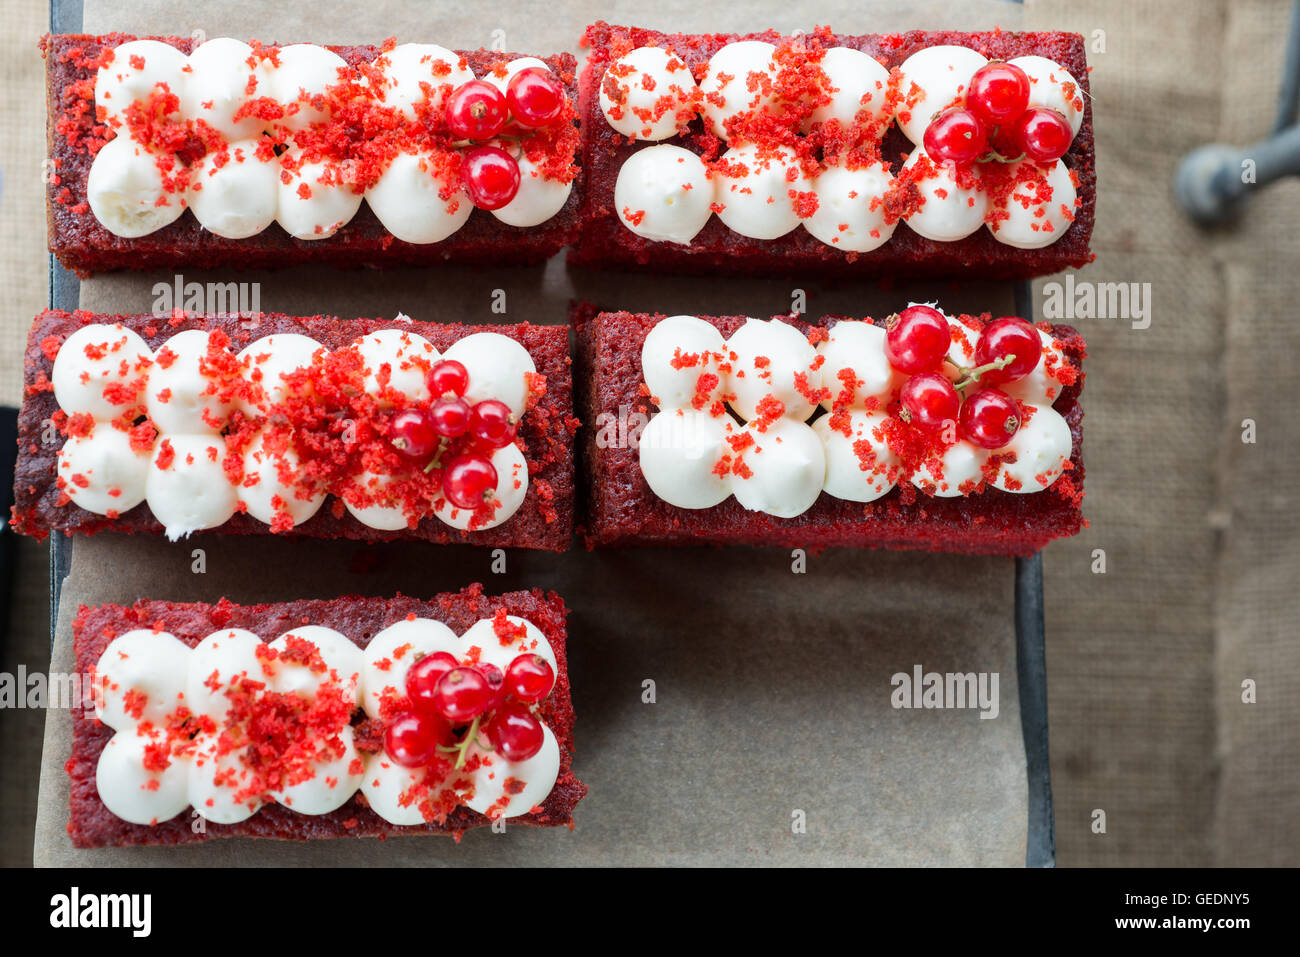 Fotografía cenital de tortas de color rojo en una bandeja para hornear con  papel absorbente. Escarcha y redcurrants blanco en la parte superior  Fotografía de stock - Alamy